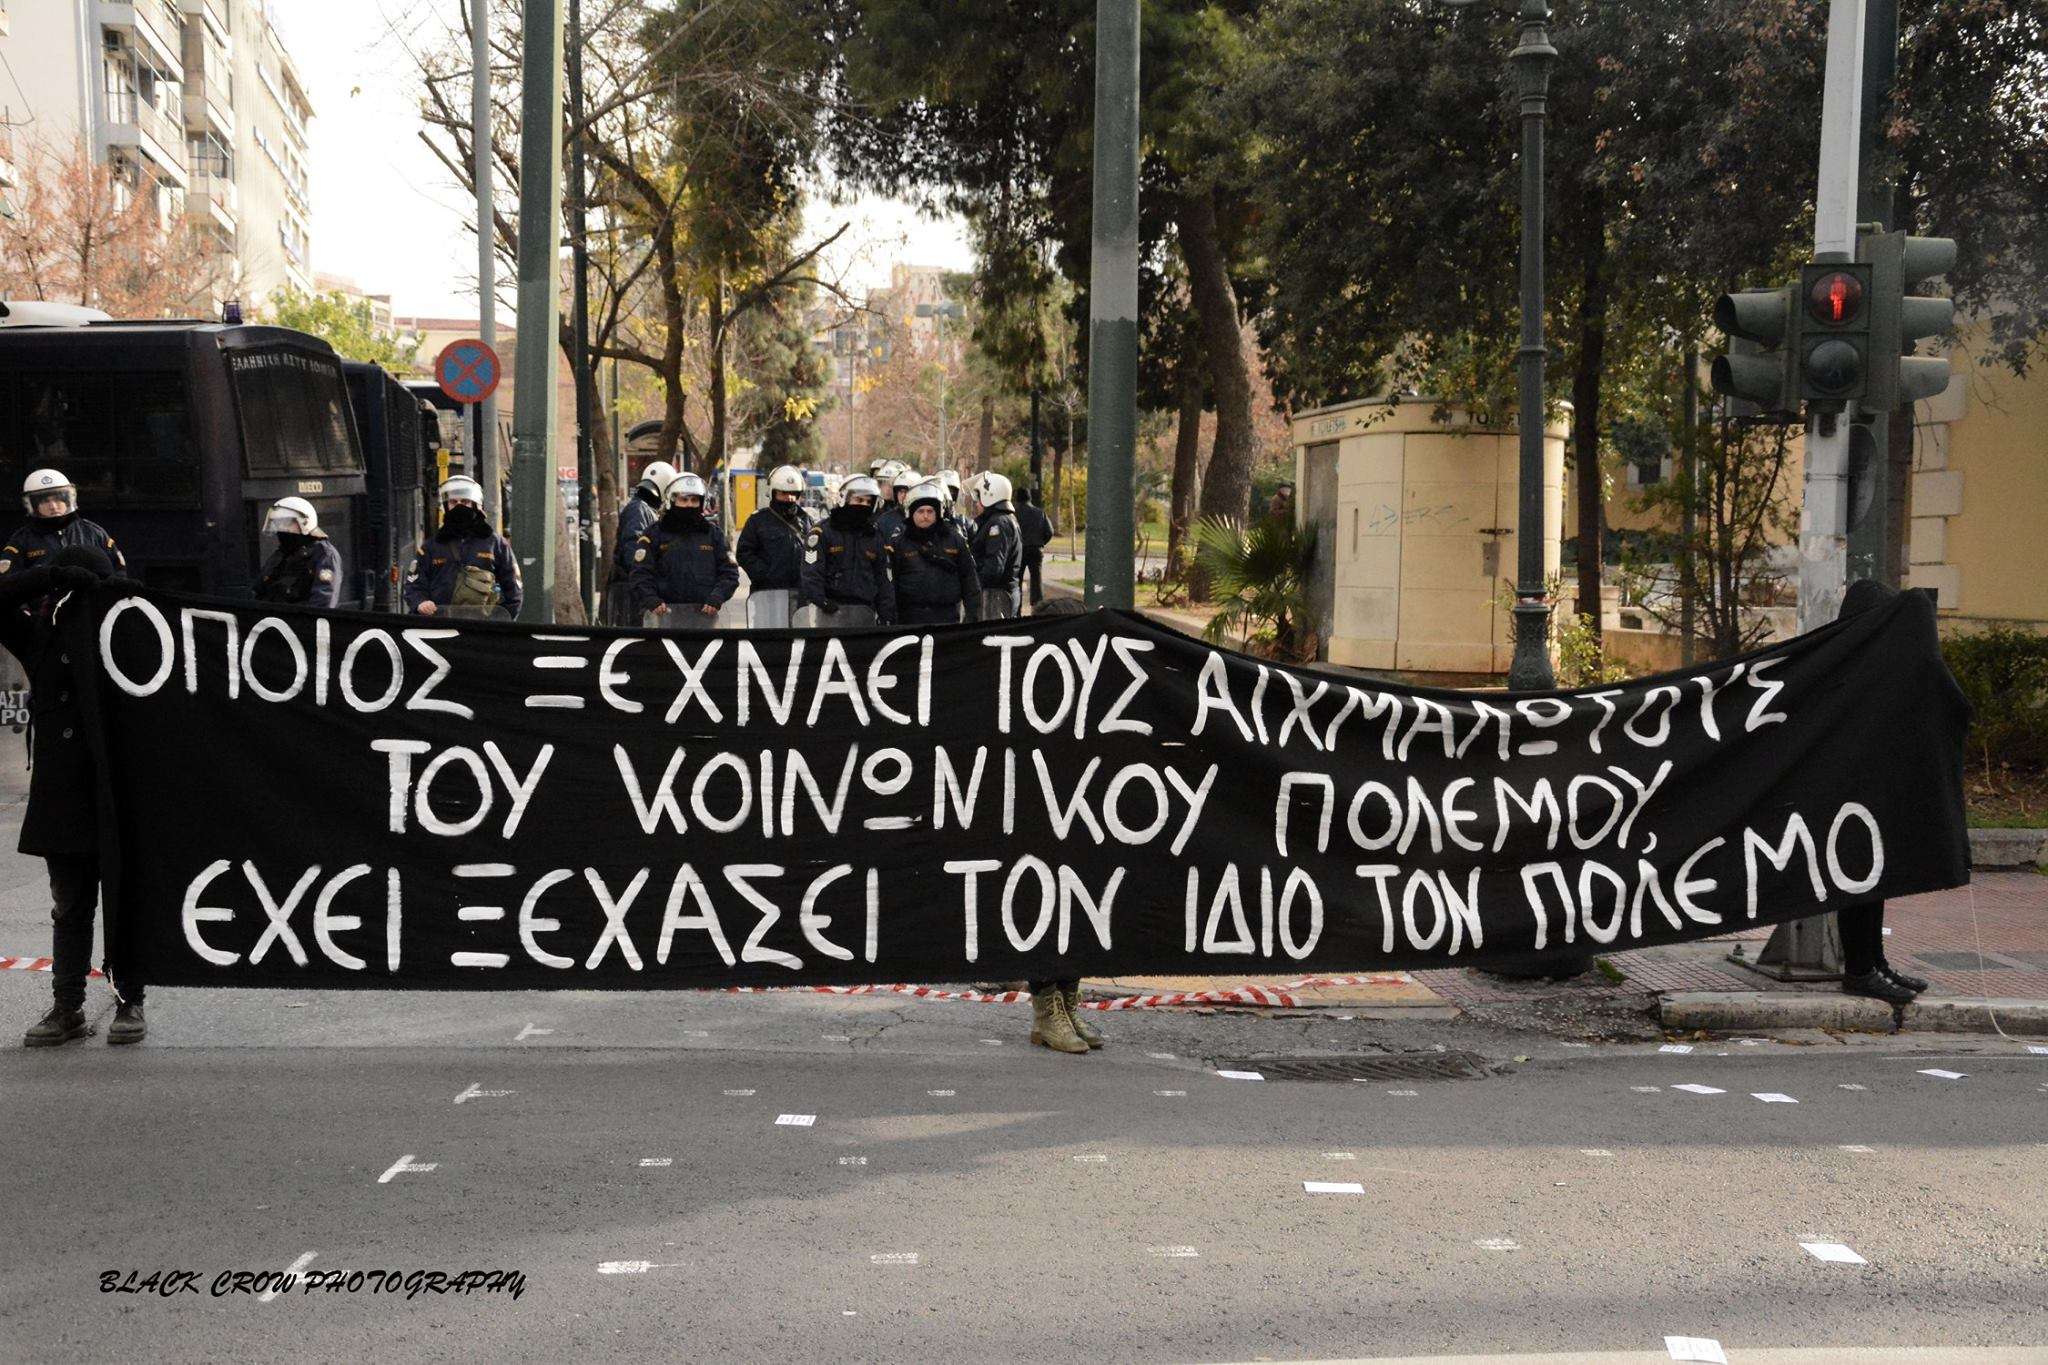 Αθήνα: Φωτορεπορτάζ από την συγκέντρωση στην πλατεία Κουμουνδούρου [07/01]